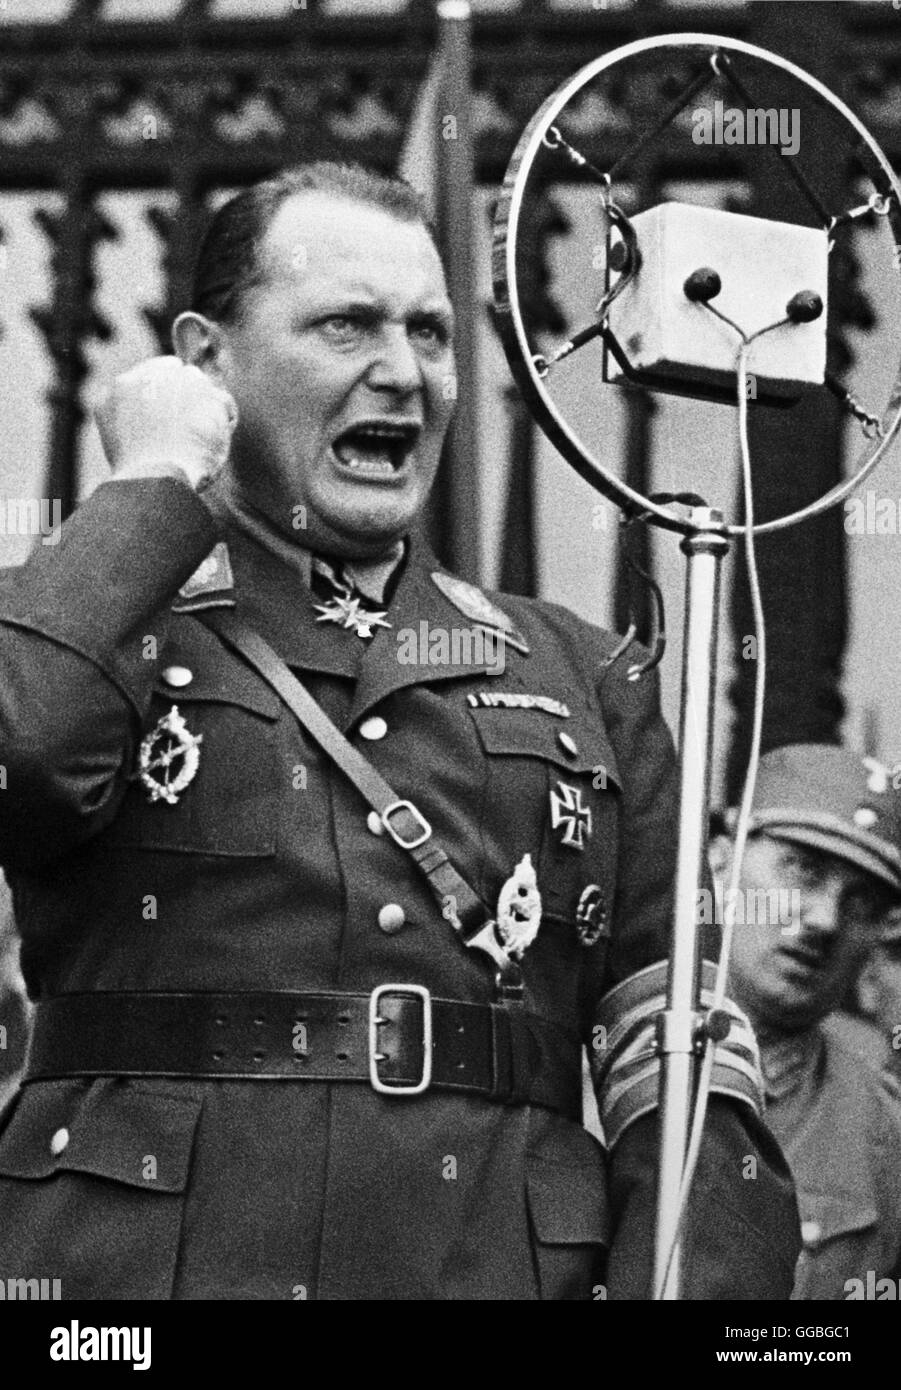 HERMANN GÖRING / Reichsminister HERMANN GÖRING bei einer Kundgebung am Heldenplatz in Wien/Austria (1932). Stock Photo